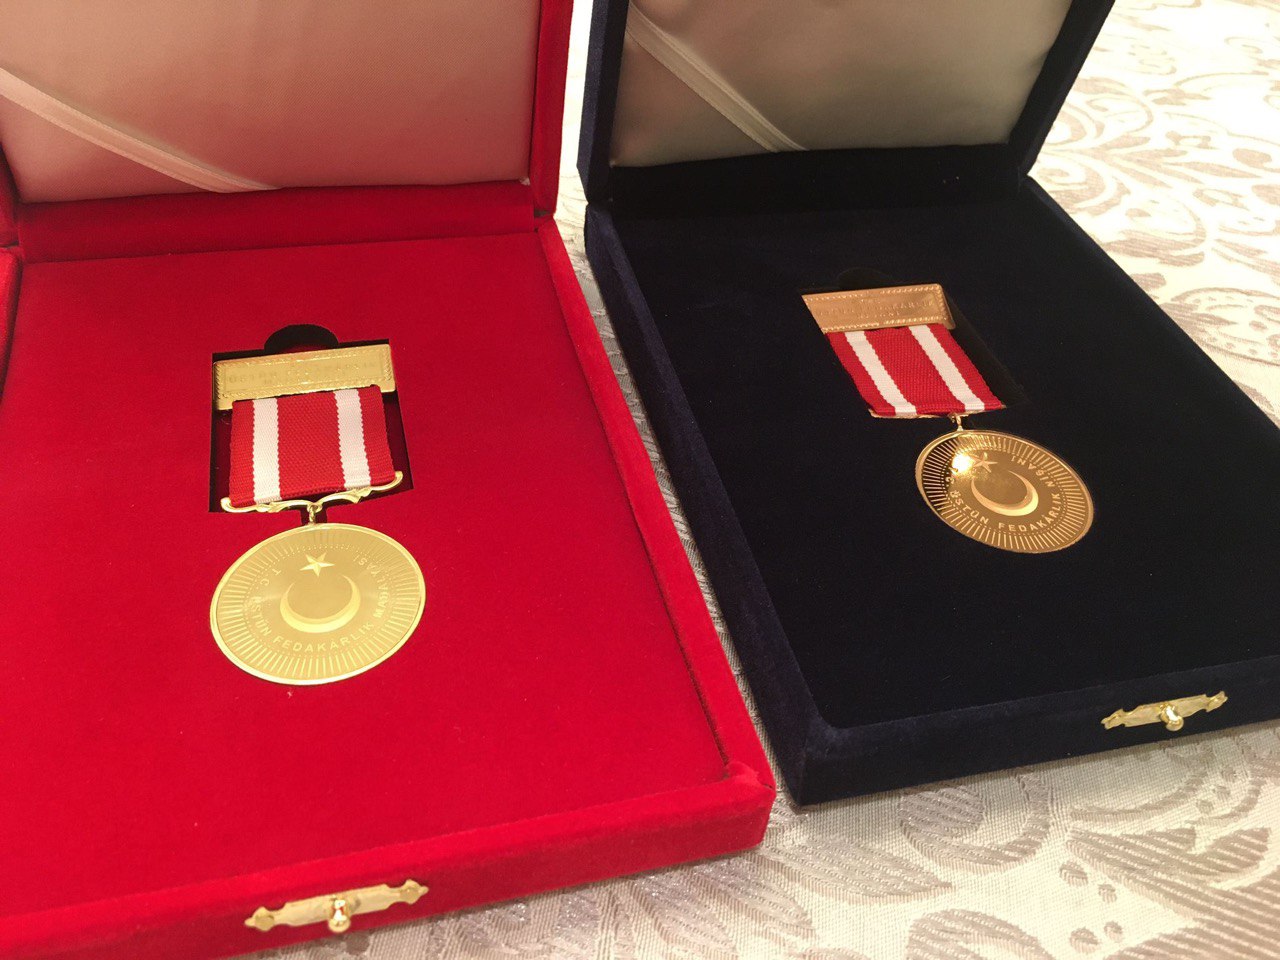 (ФОТО) Молдавских спасателей наградили медалью в Турции за помощь в ликвидации последствий землетрясения